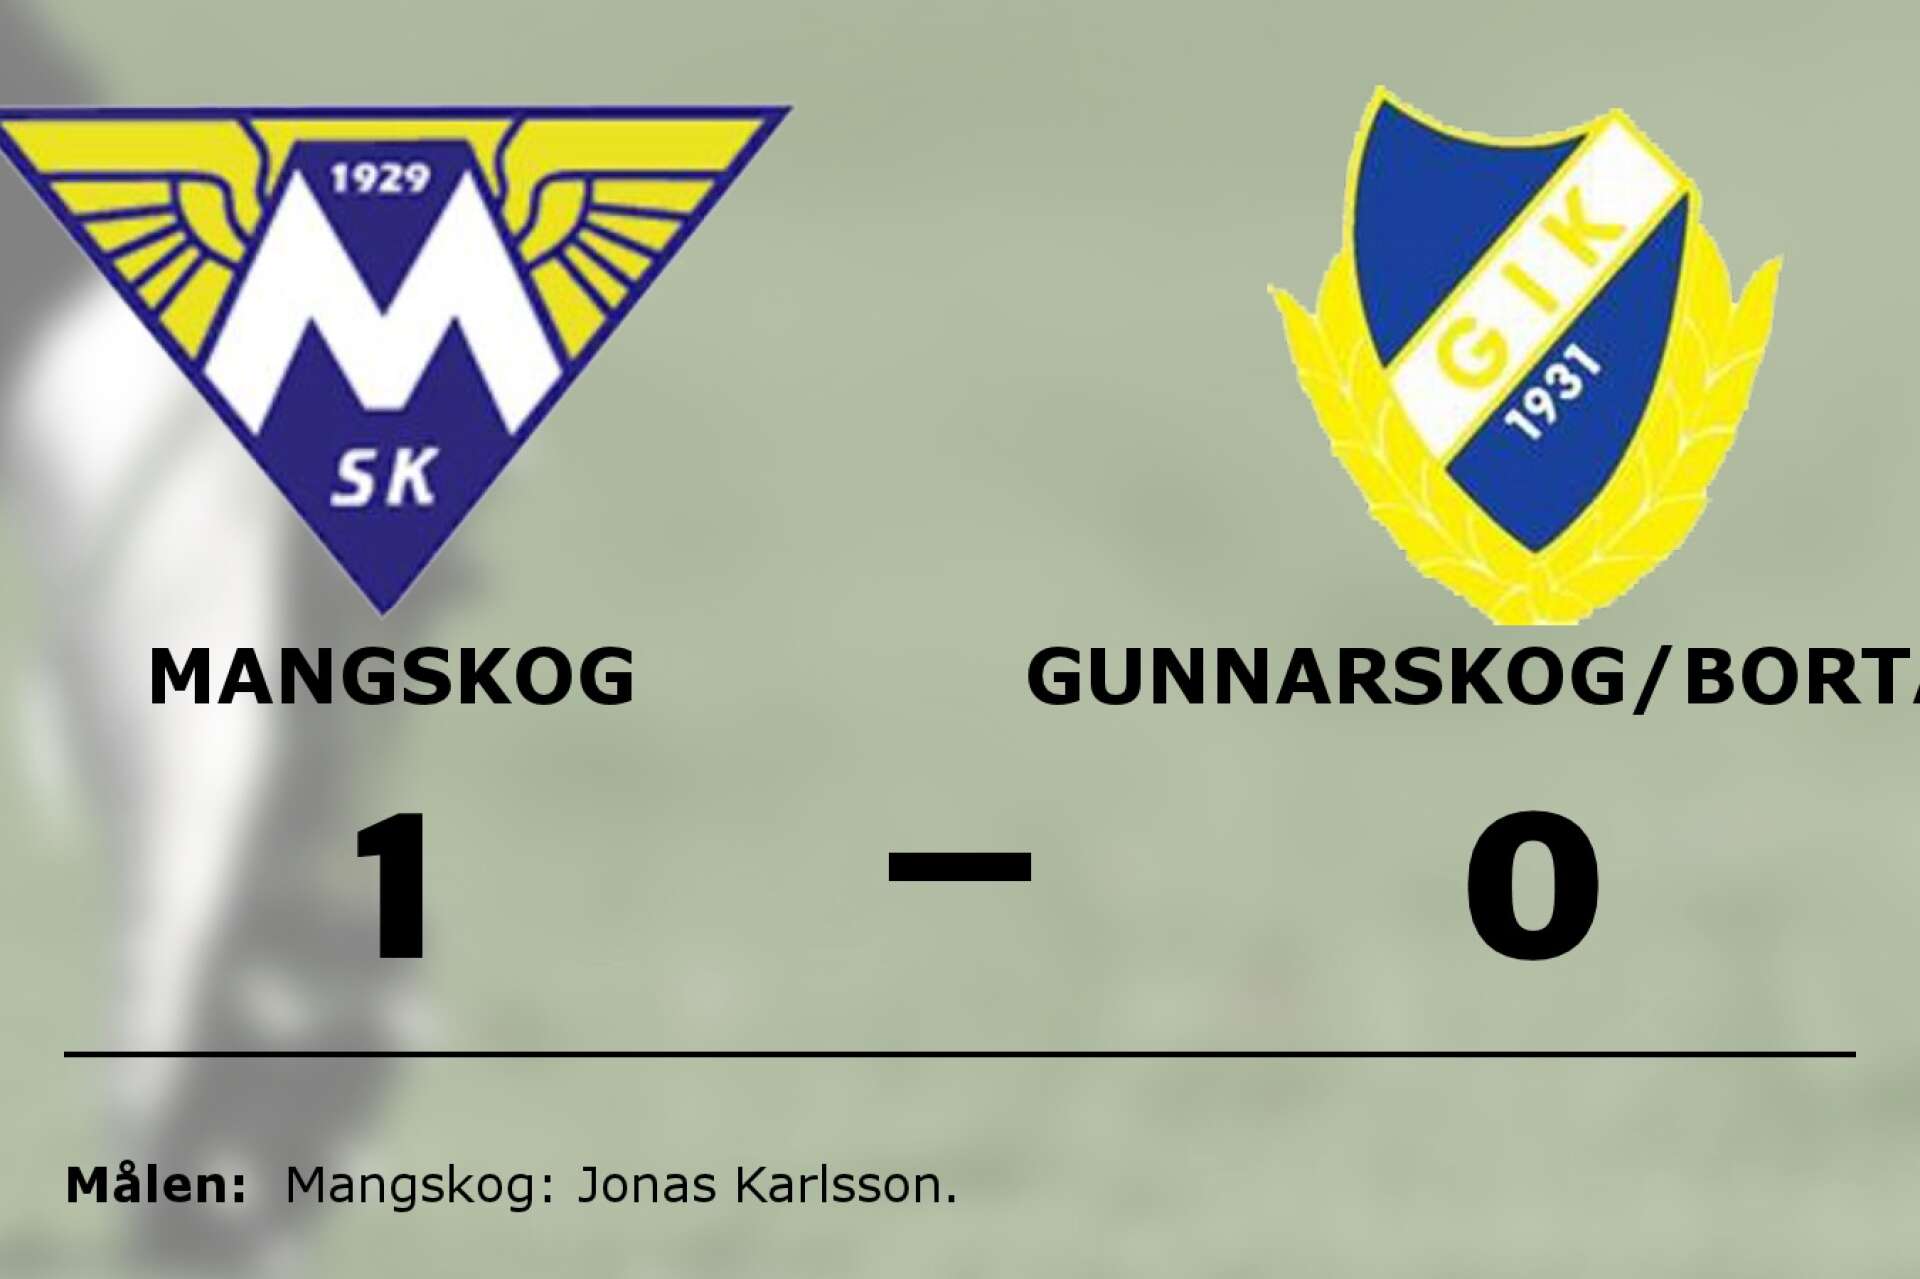 Mangskogs SK vann mot Gunnarskog/Bortan